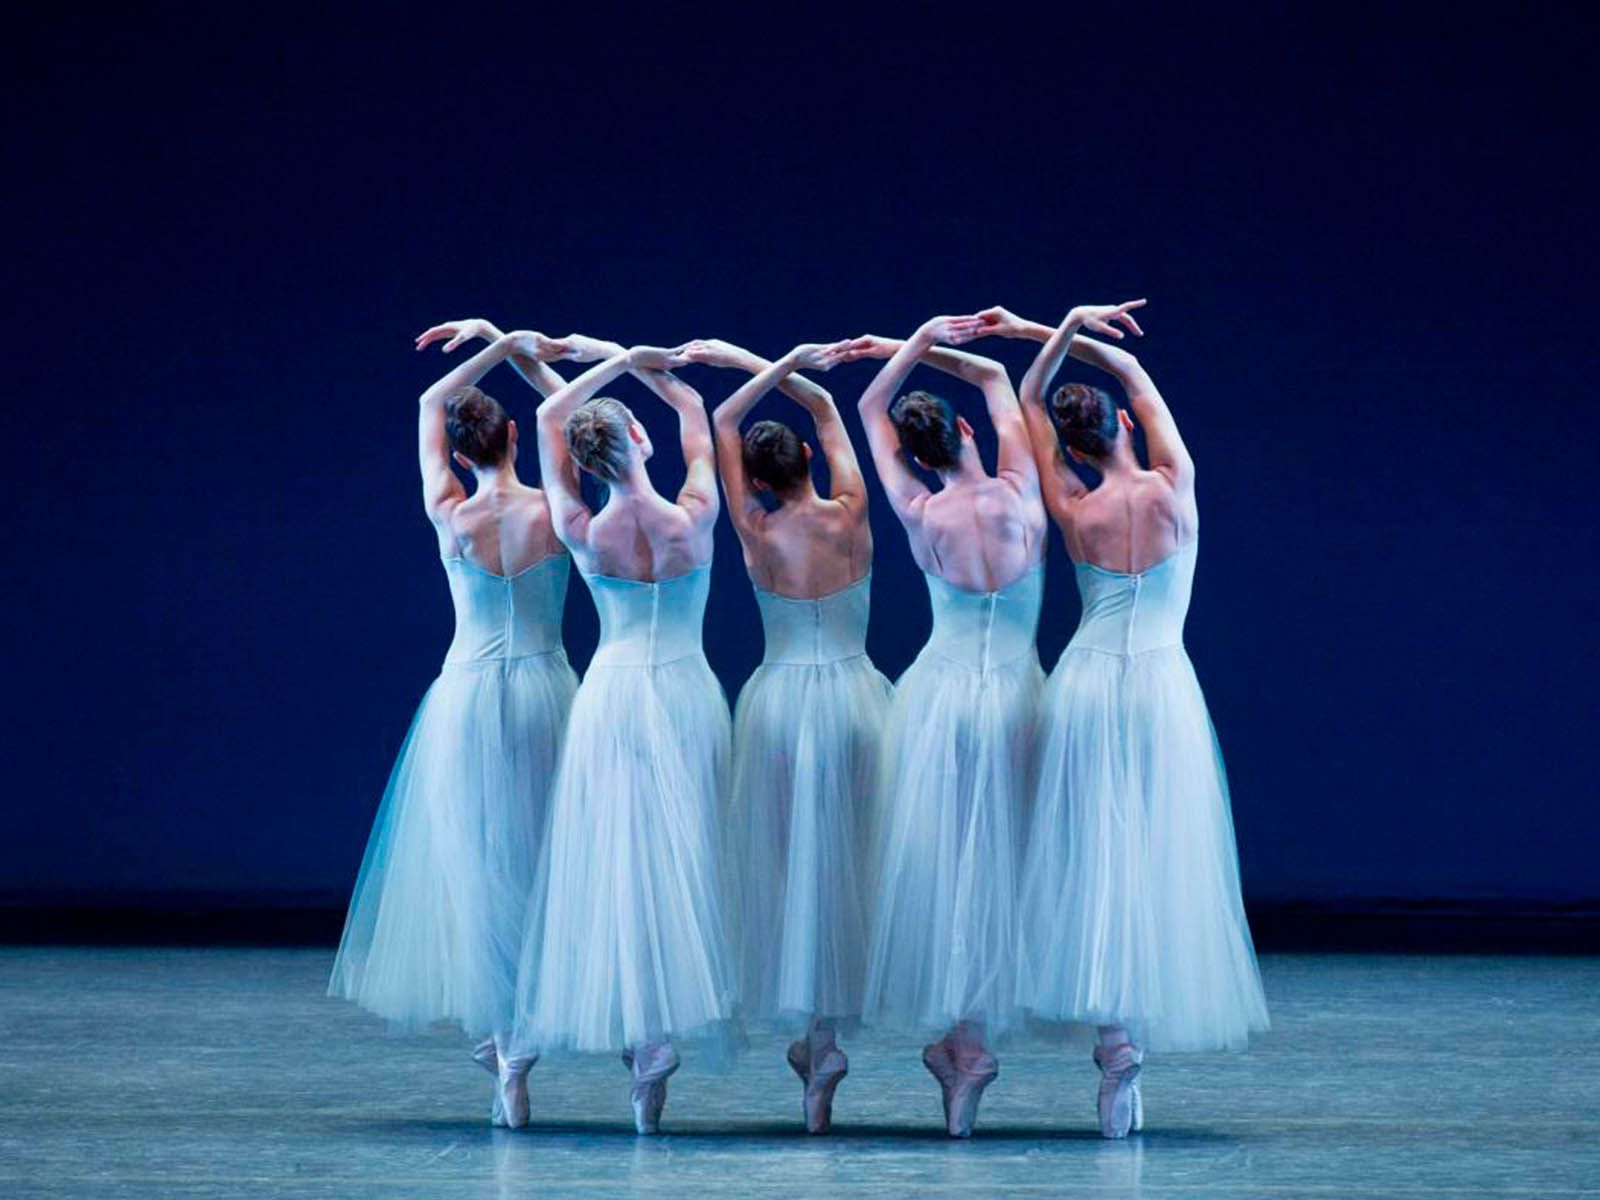 Palomo Spain diseñará el vestuario del Ballet de Nueva York